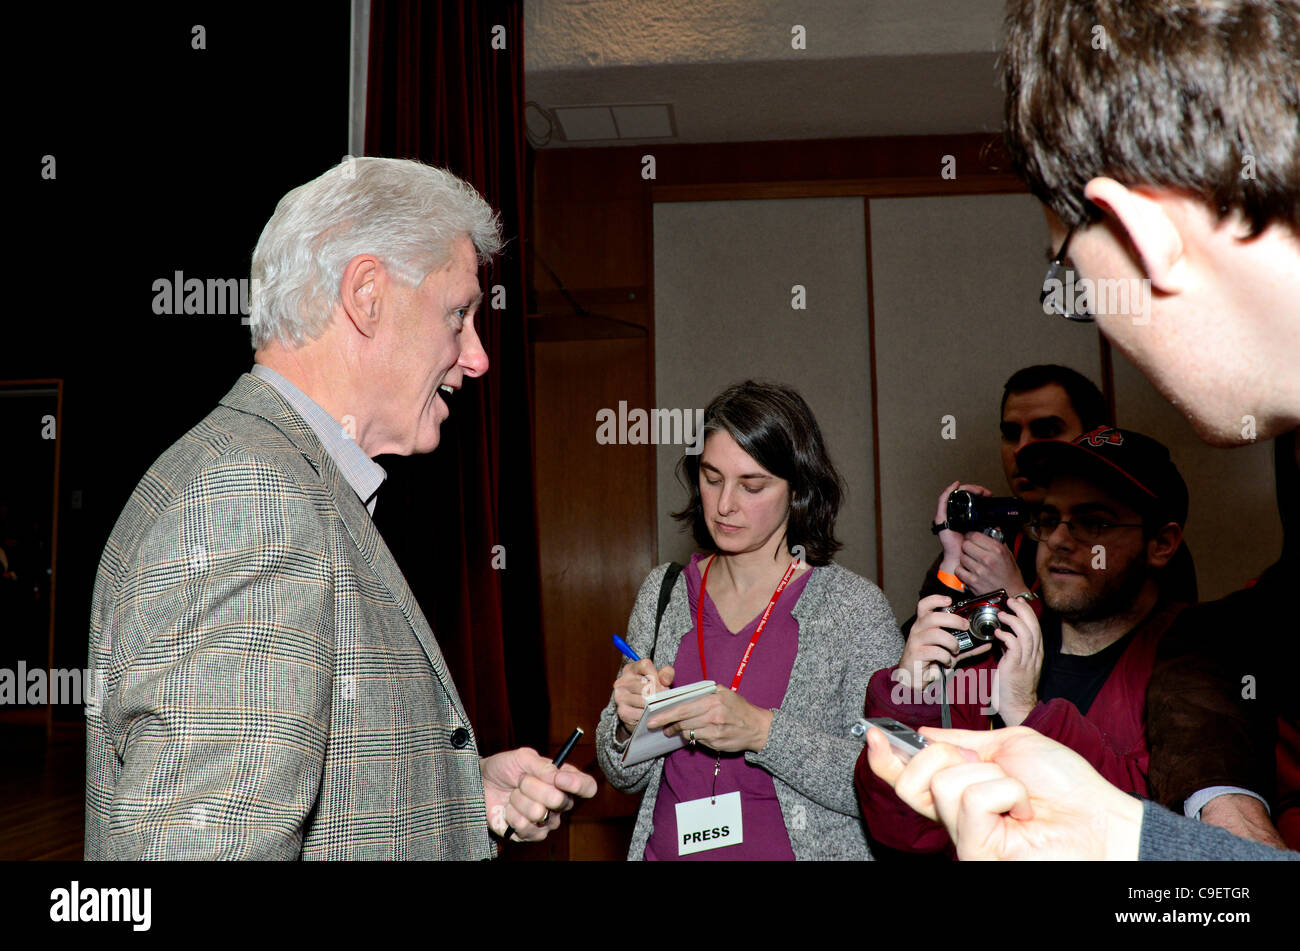 Ehemalige US-Präsident Bill Clinton spricht an die Presse bei der Unterzeichnung seines neuen Buches zurück zu Arbeit in seiner Heimatstadt Bibliothek in Chappaqua, New York. Rund 500 Menschen nahmen an der Veranstaltung Freitag, 9. Dezember 2011. Stockfoto